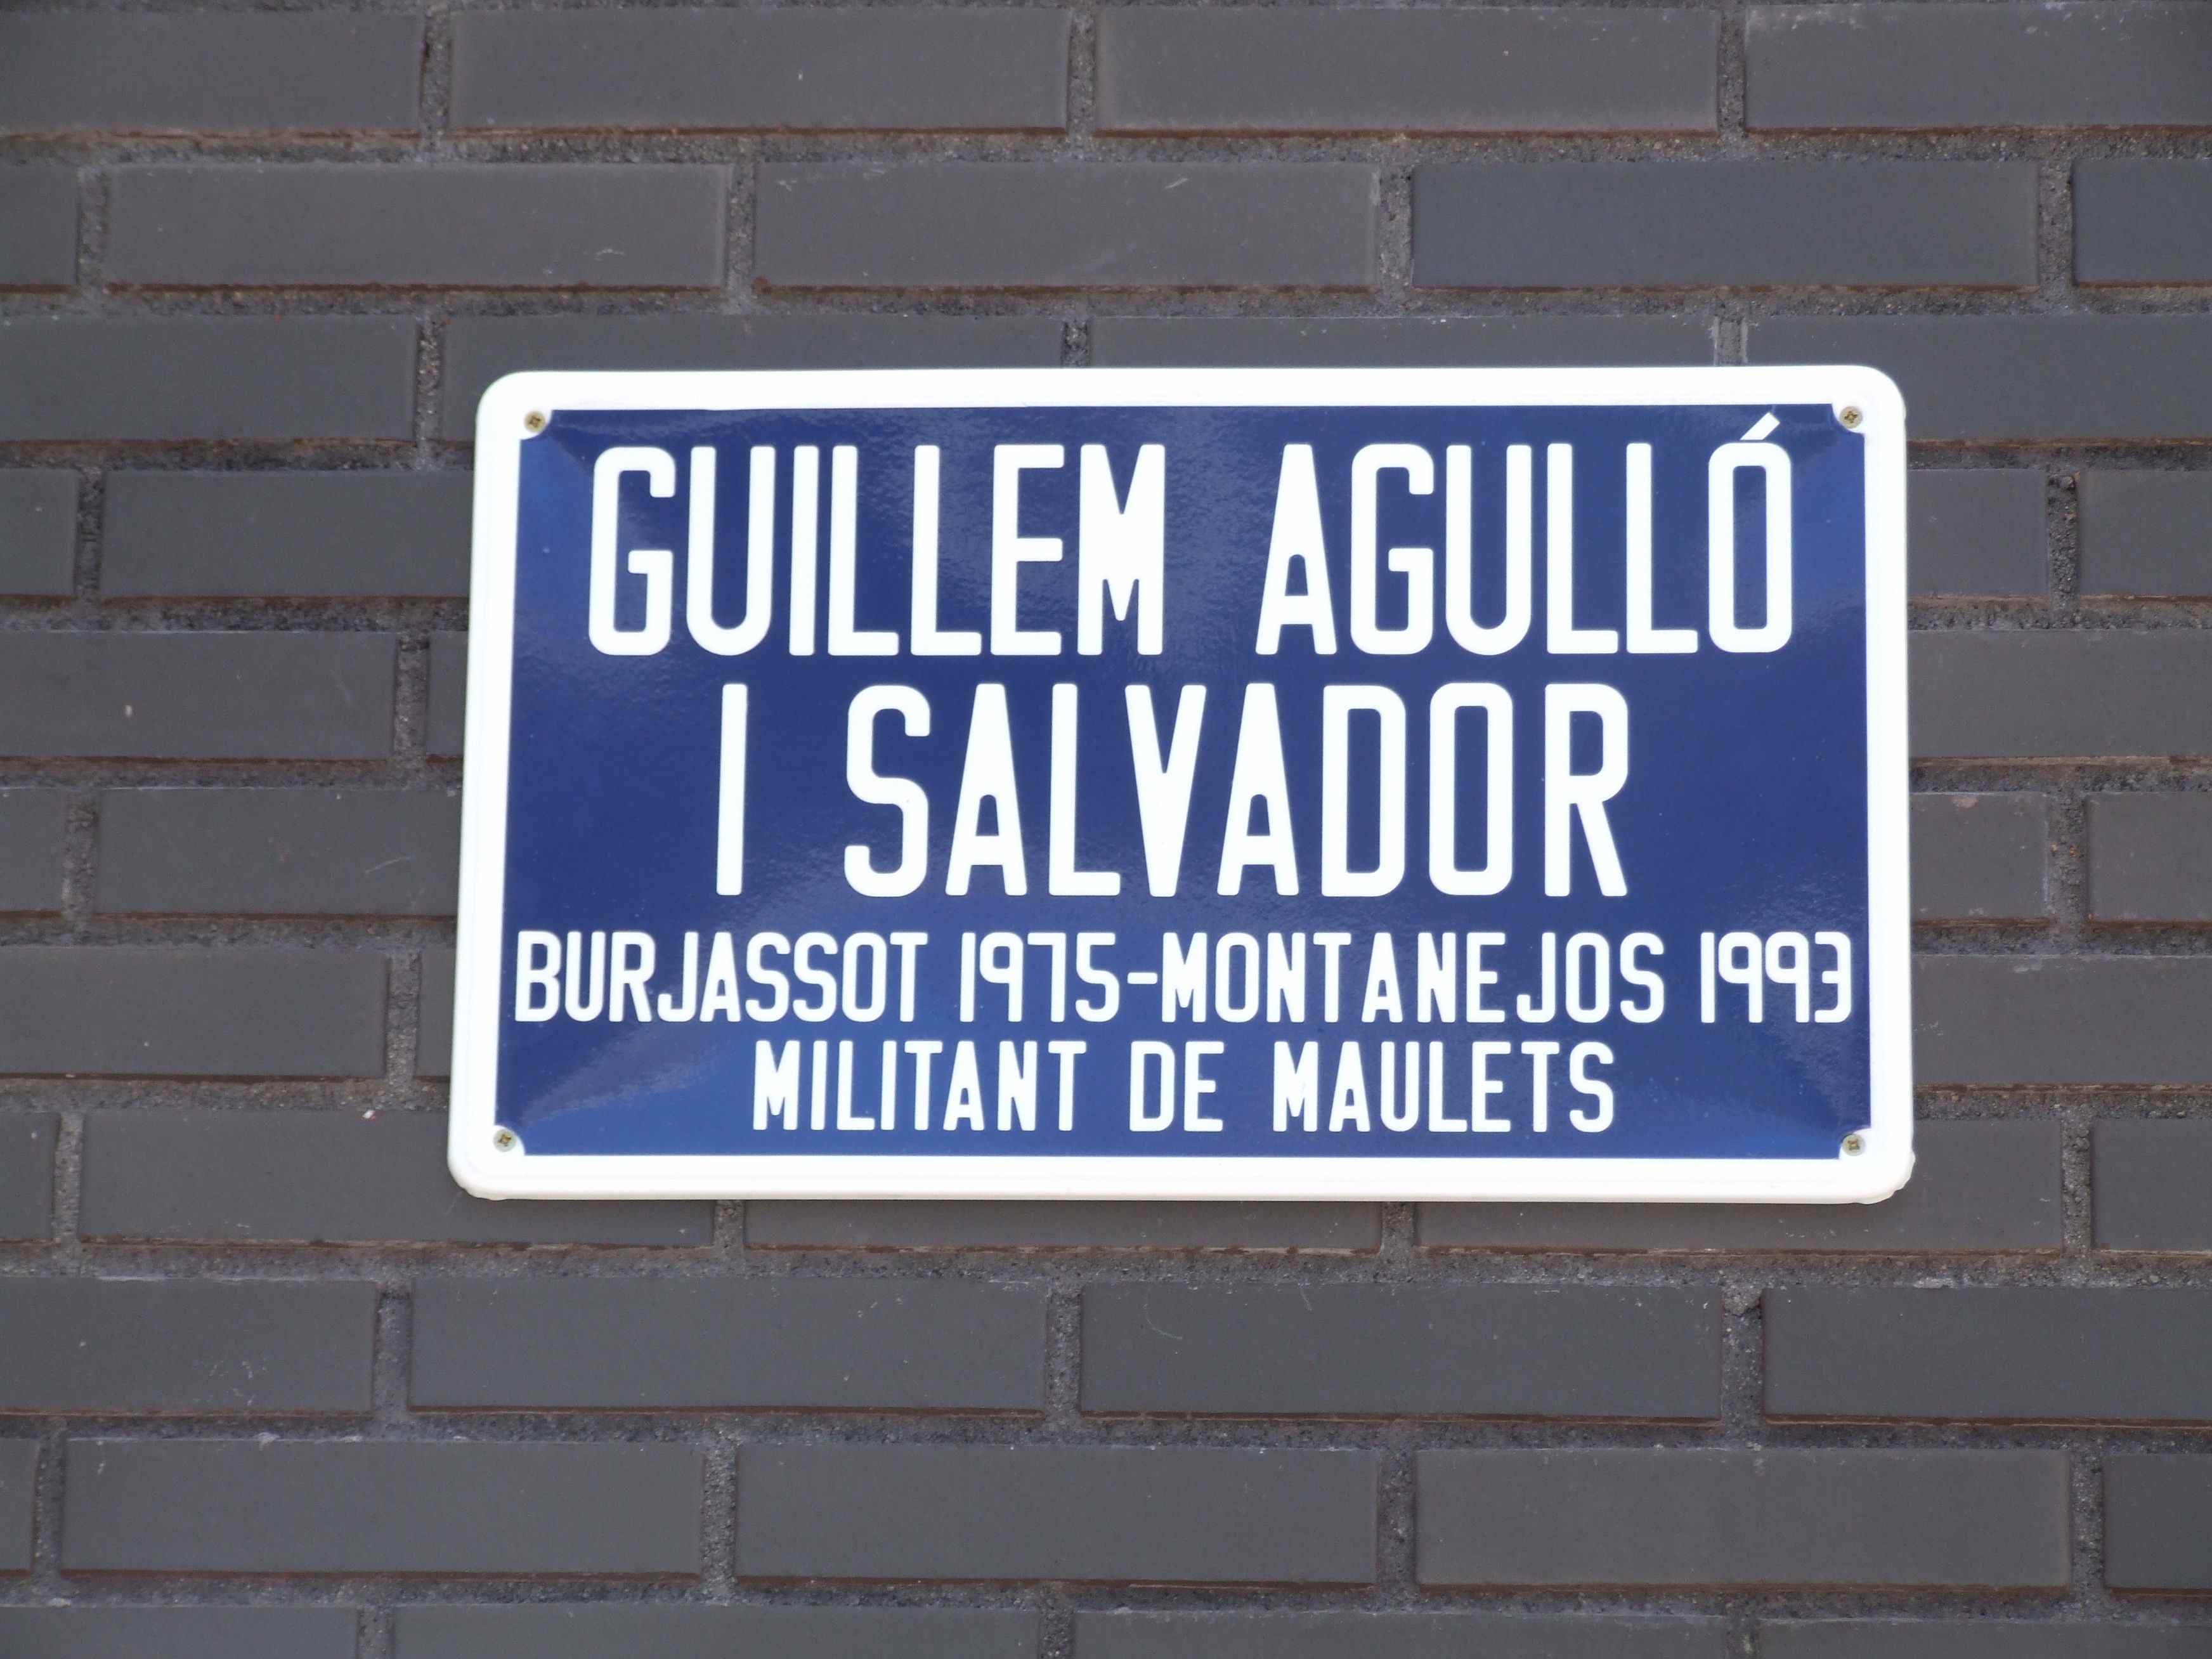 Barcelona dedicará una calle a Guillem Agulló (con la única oposición del PP)